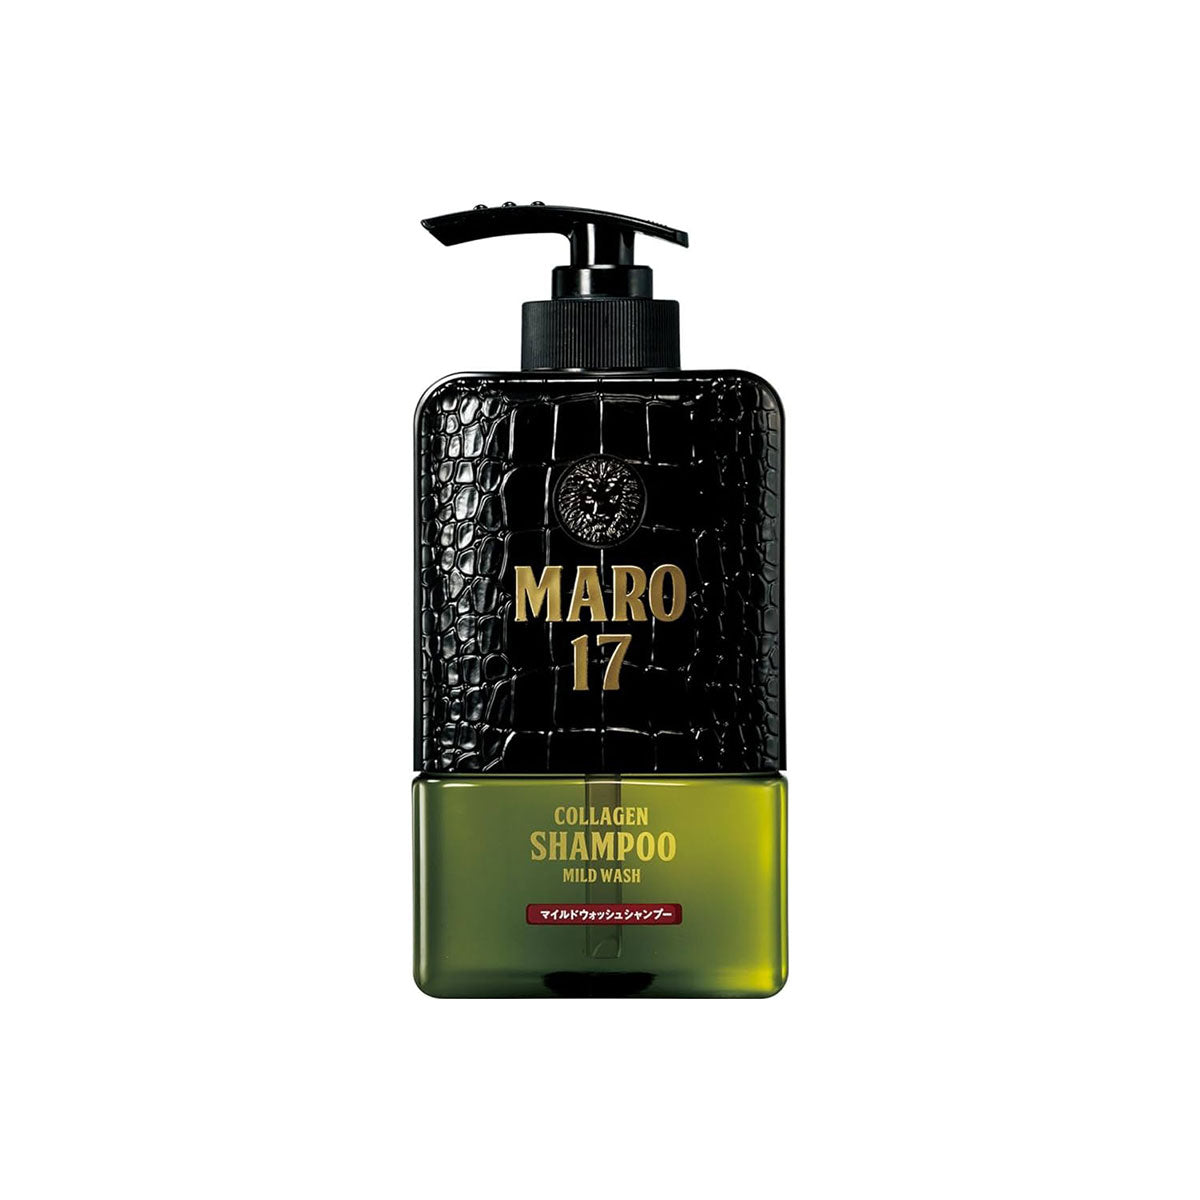 Maro17胶原蛋白温和洗发水350ml